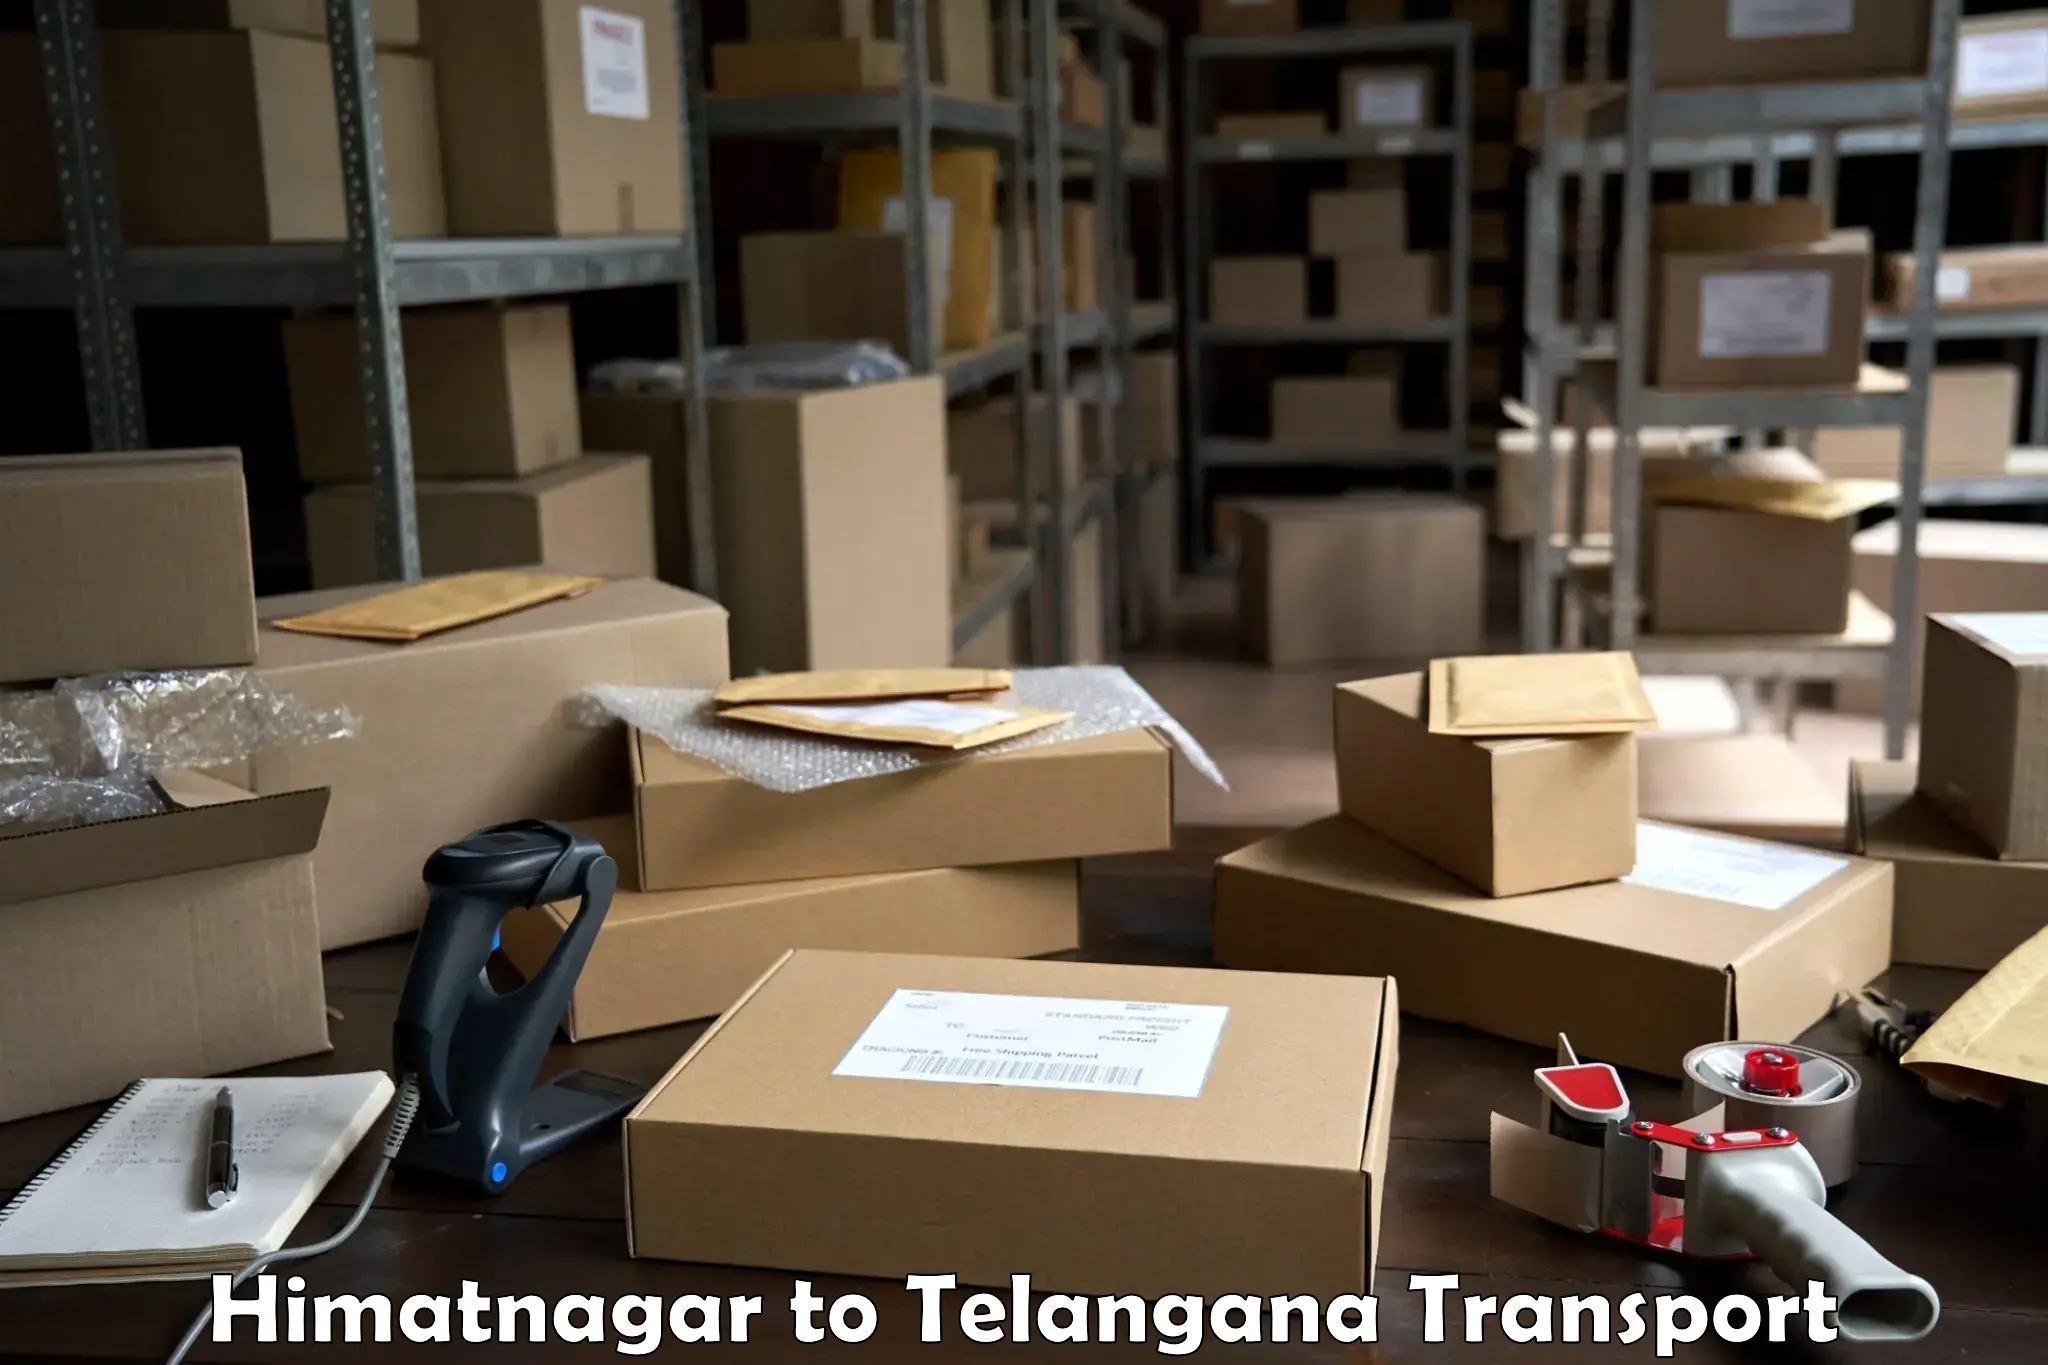 Air freight transport services Himatnagar to Karimnagar